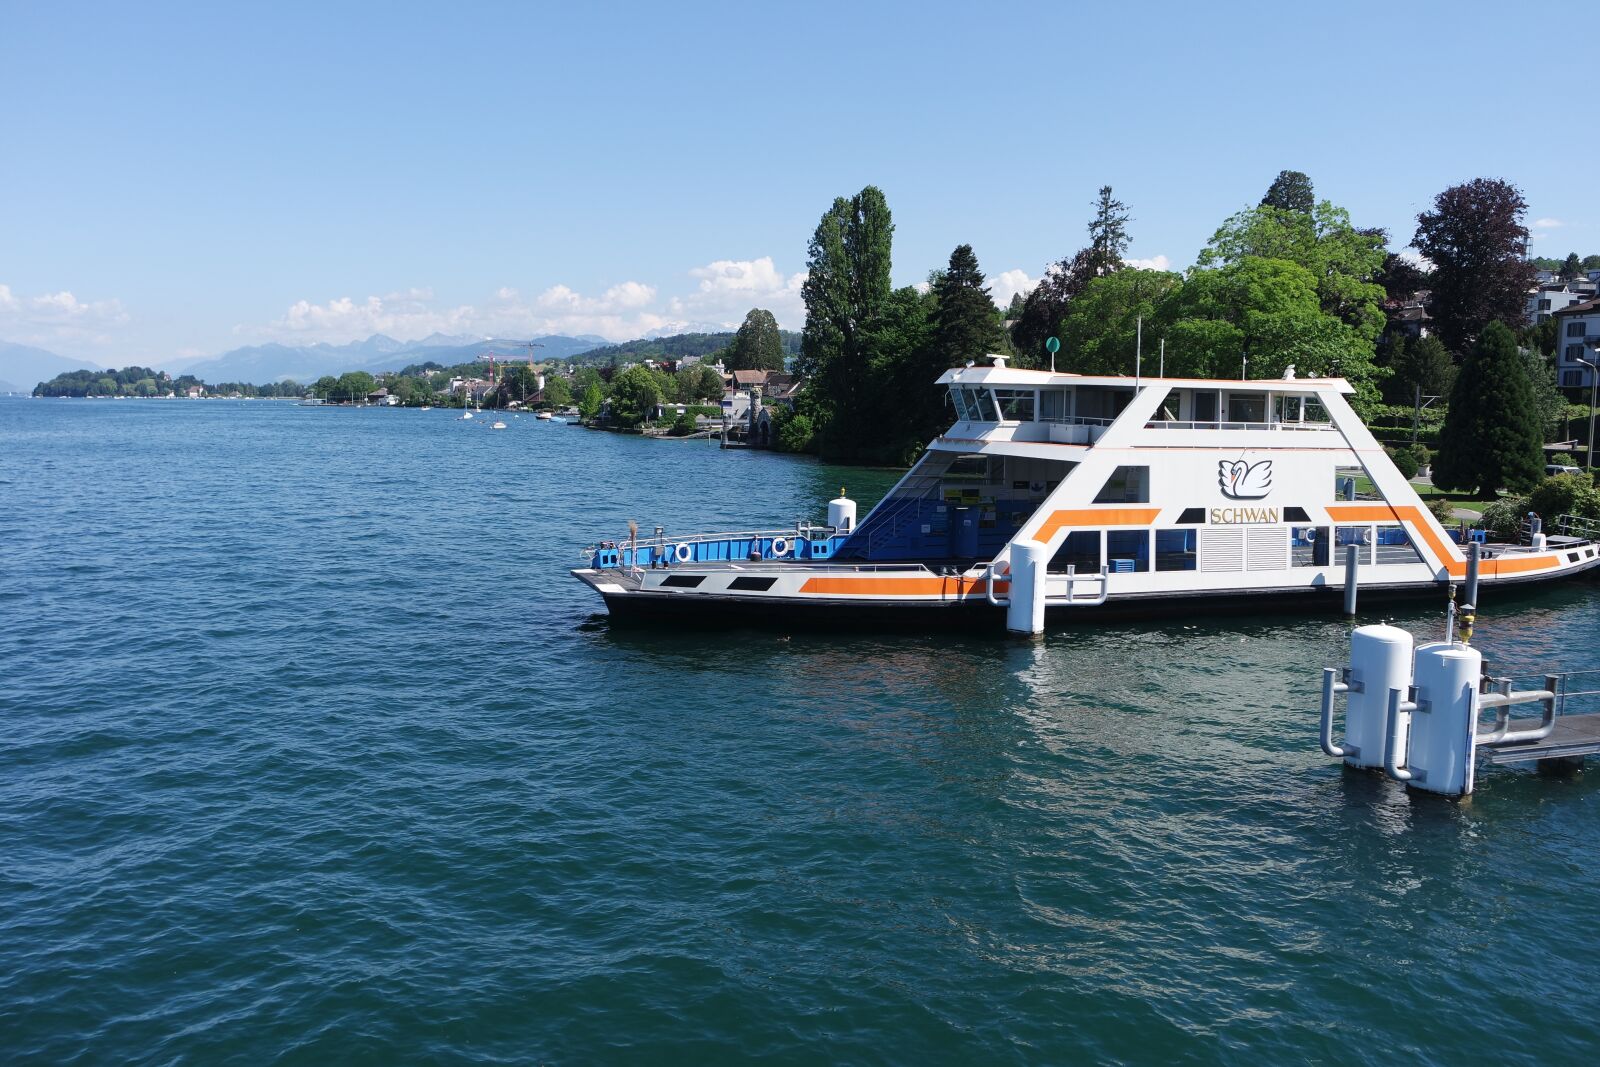 Samsung NX3000 sample photo. Zurich, lake zurich, ferry photography